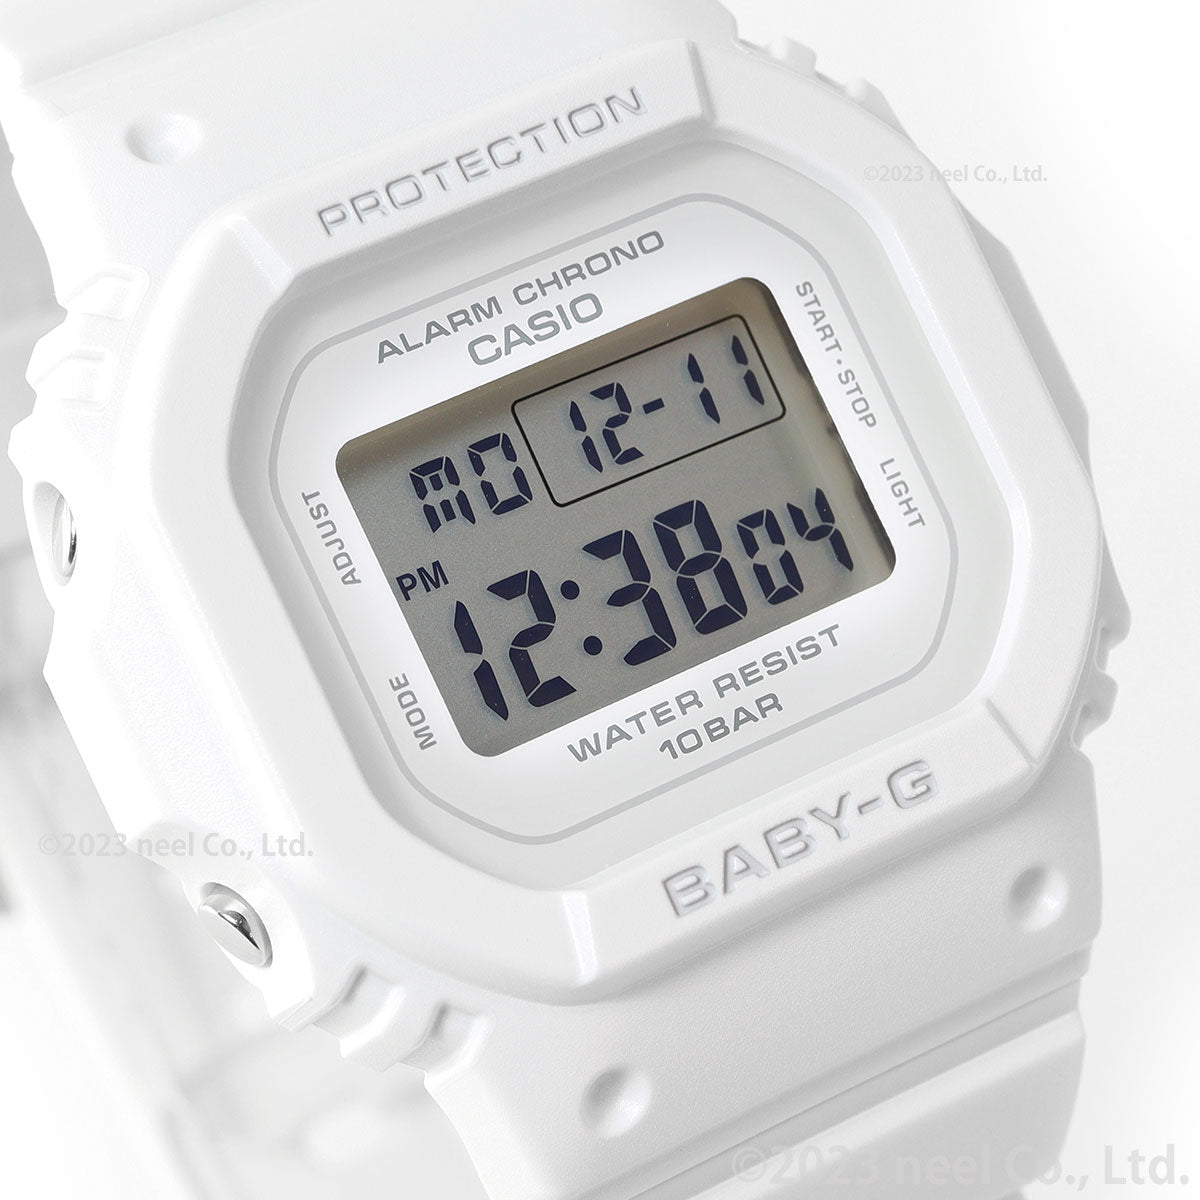 BABY-G カシオ ベビーG レディース デジタル 腕時計 BGD-565U-7JF ホワイト